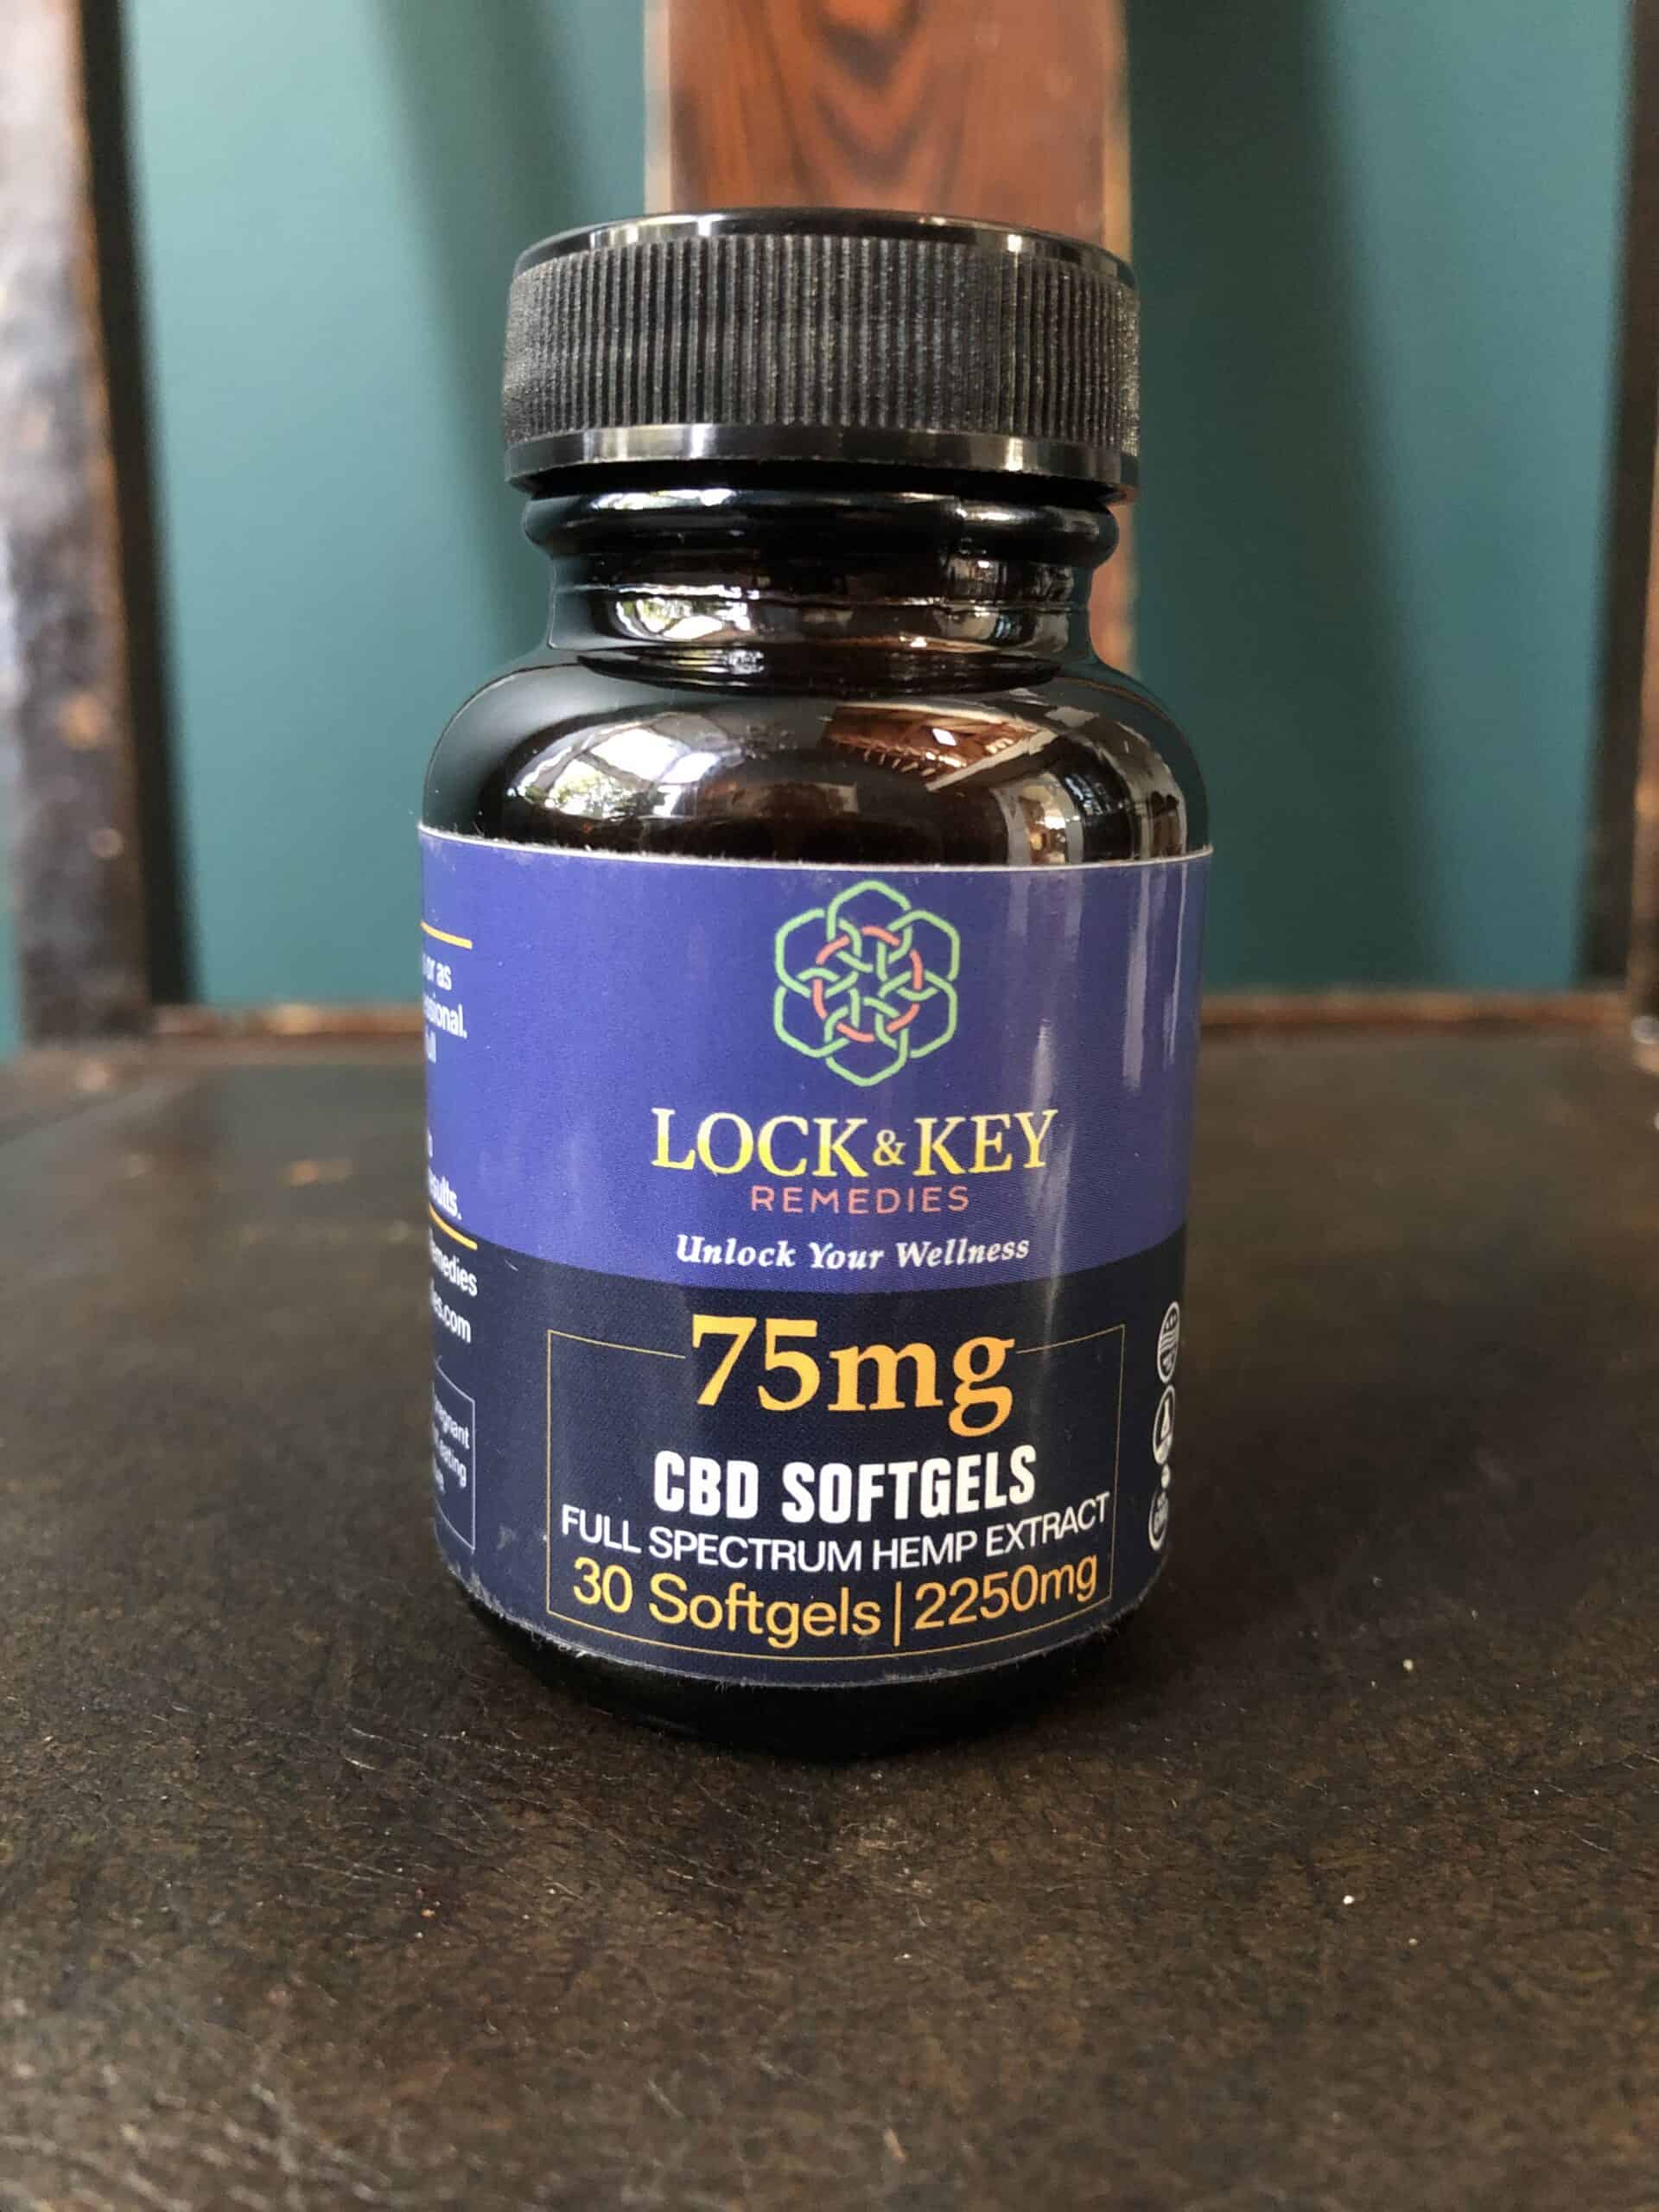 Lock & Key Remedies: 75mg CBD Softgels